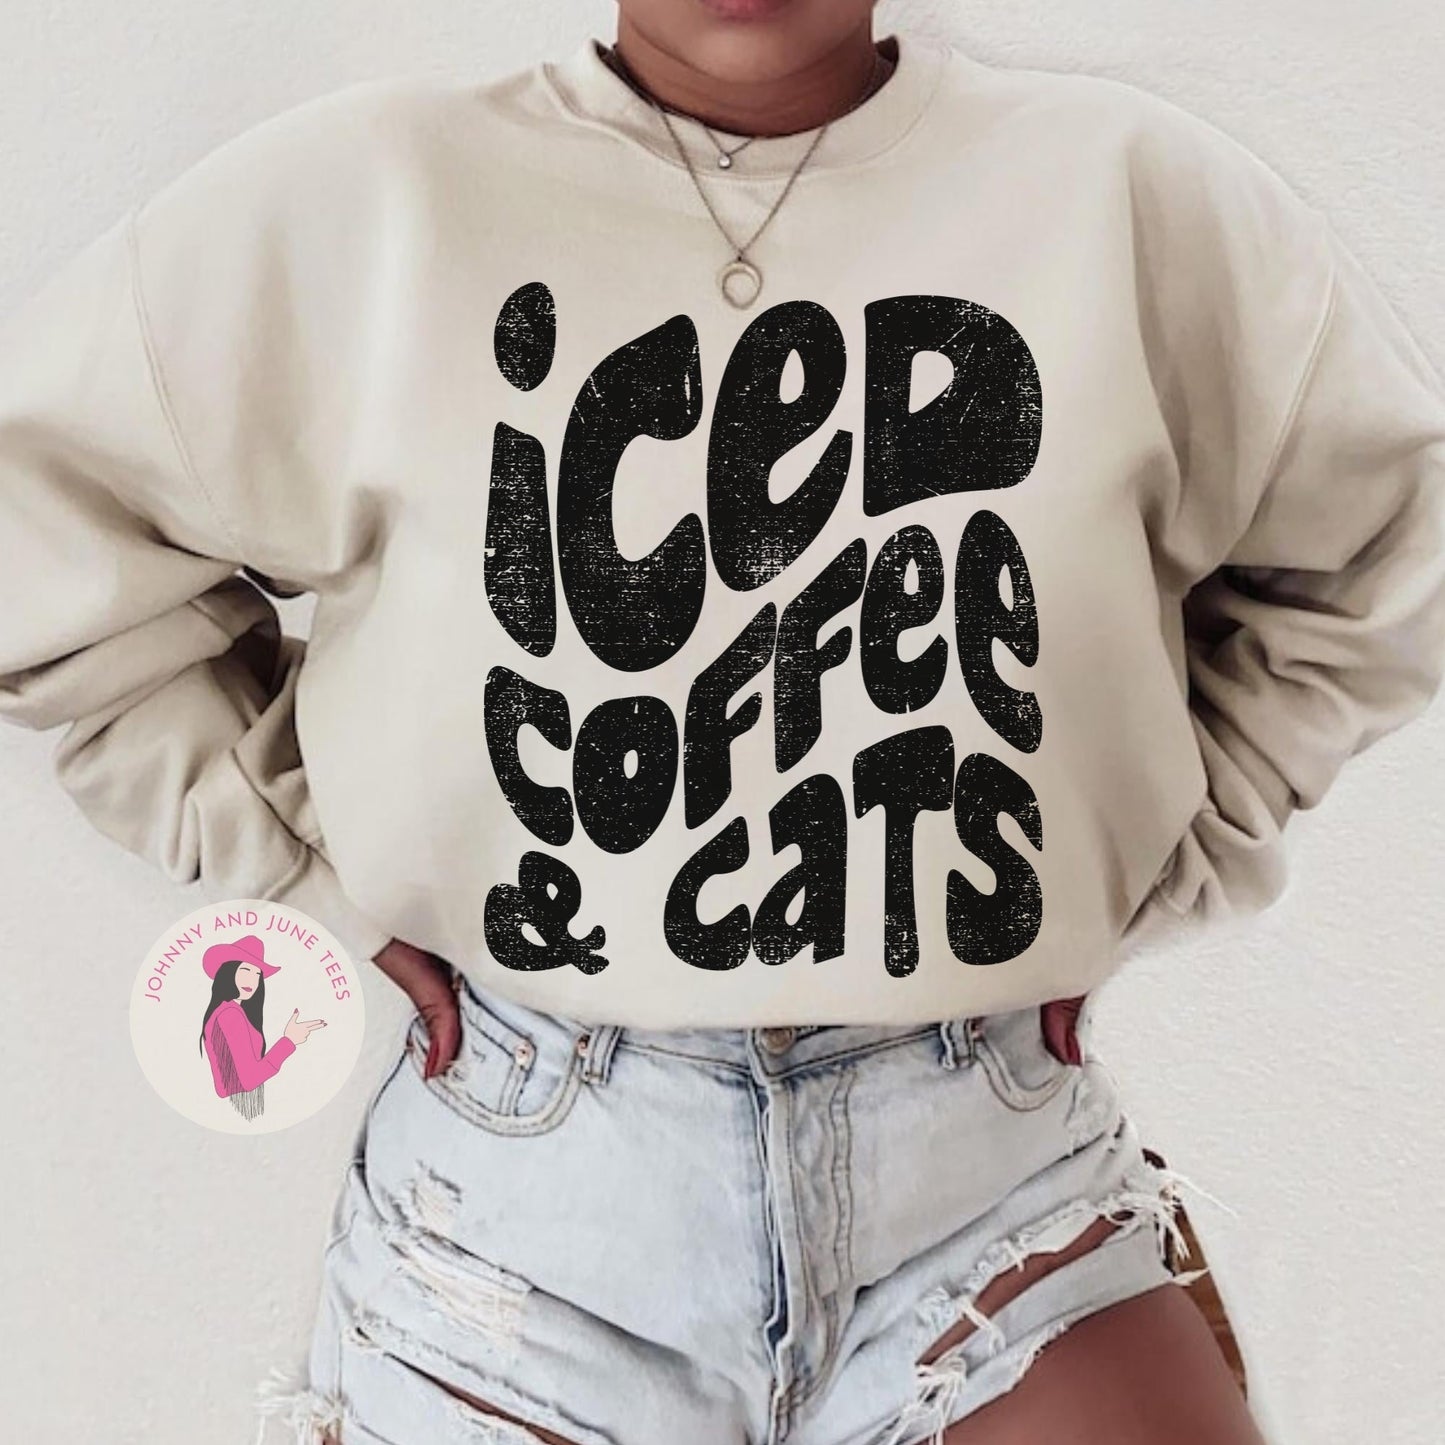 Iced Coffee and Cats Sweatshirt